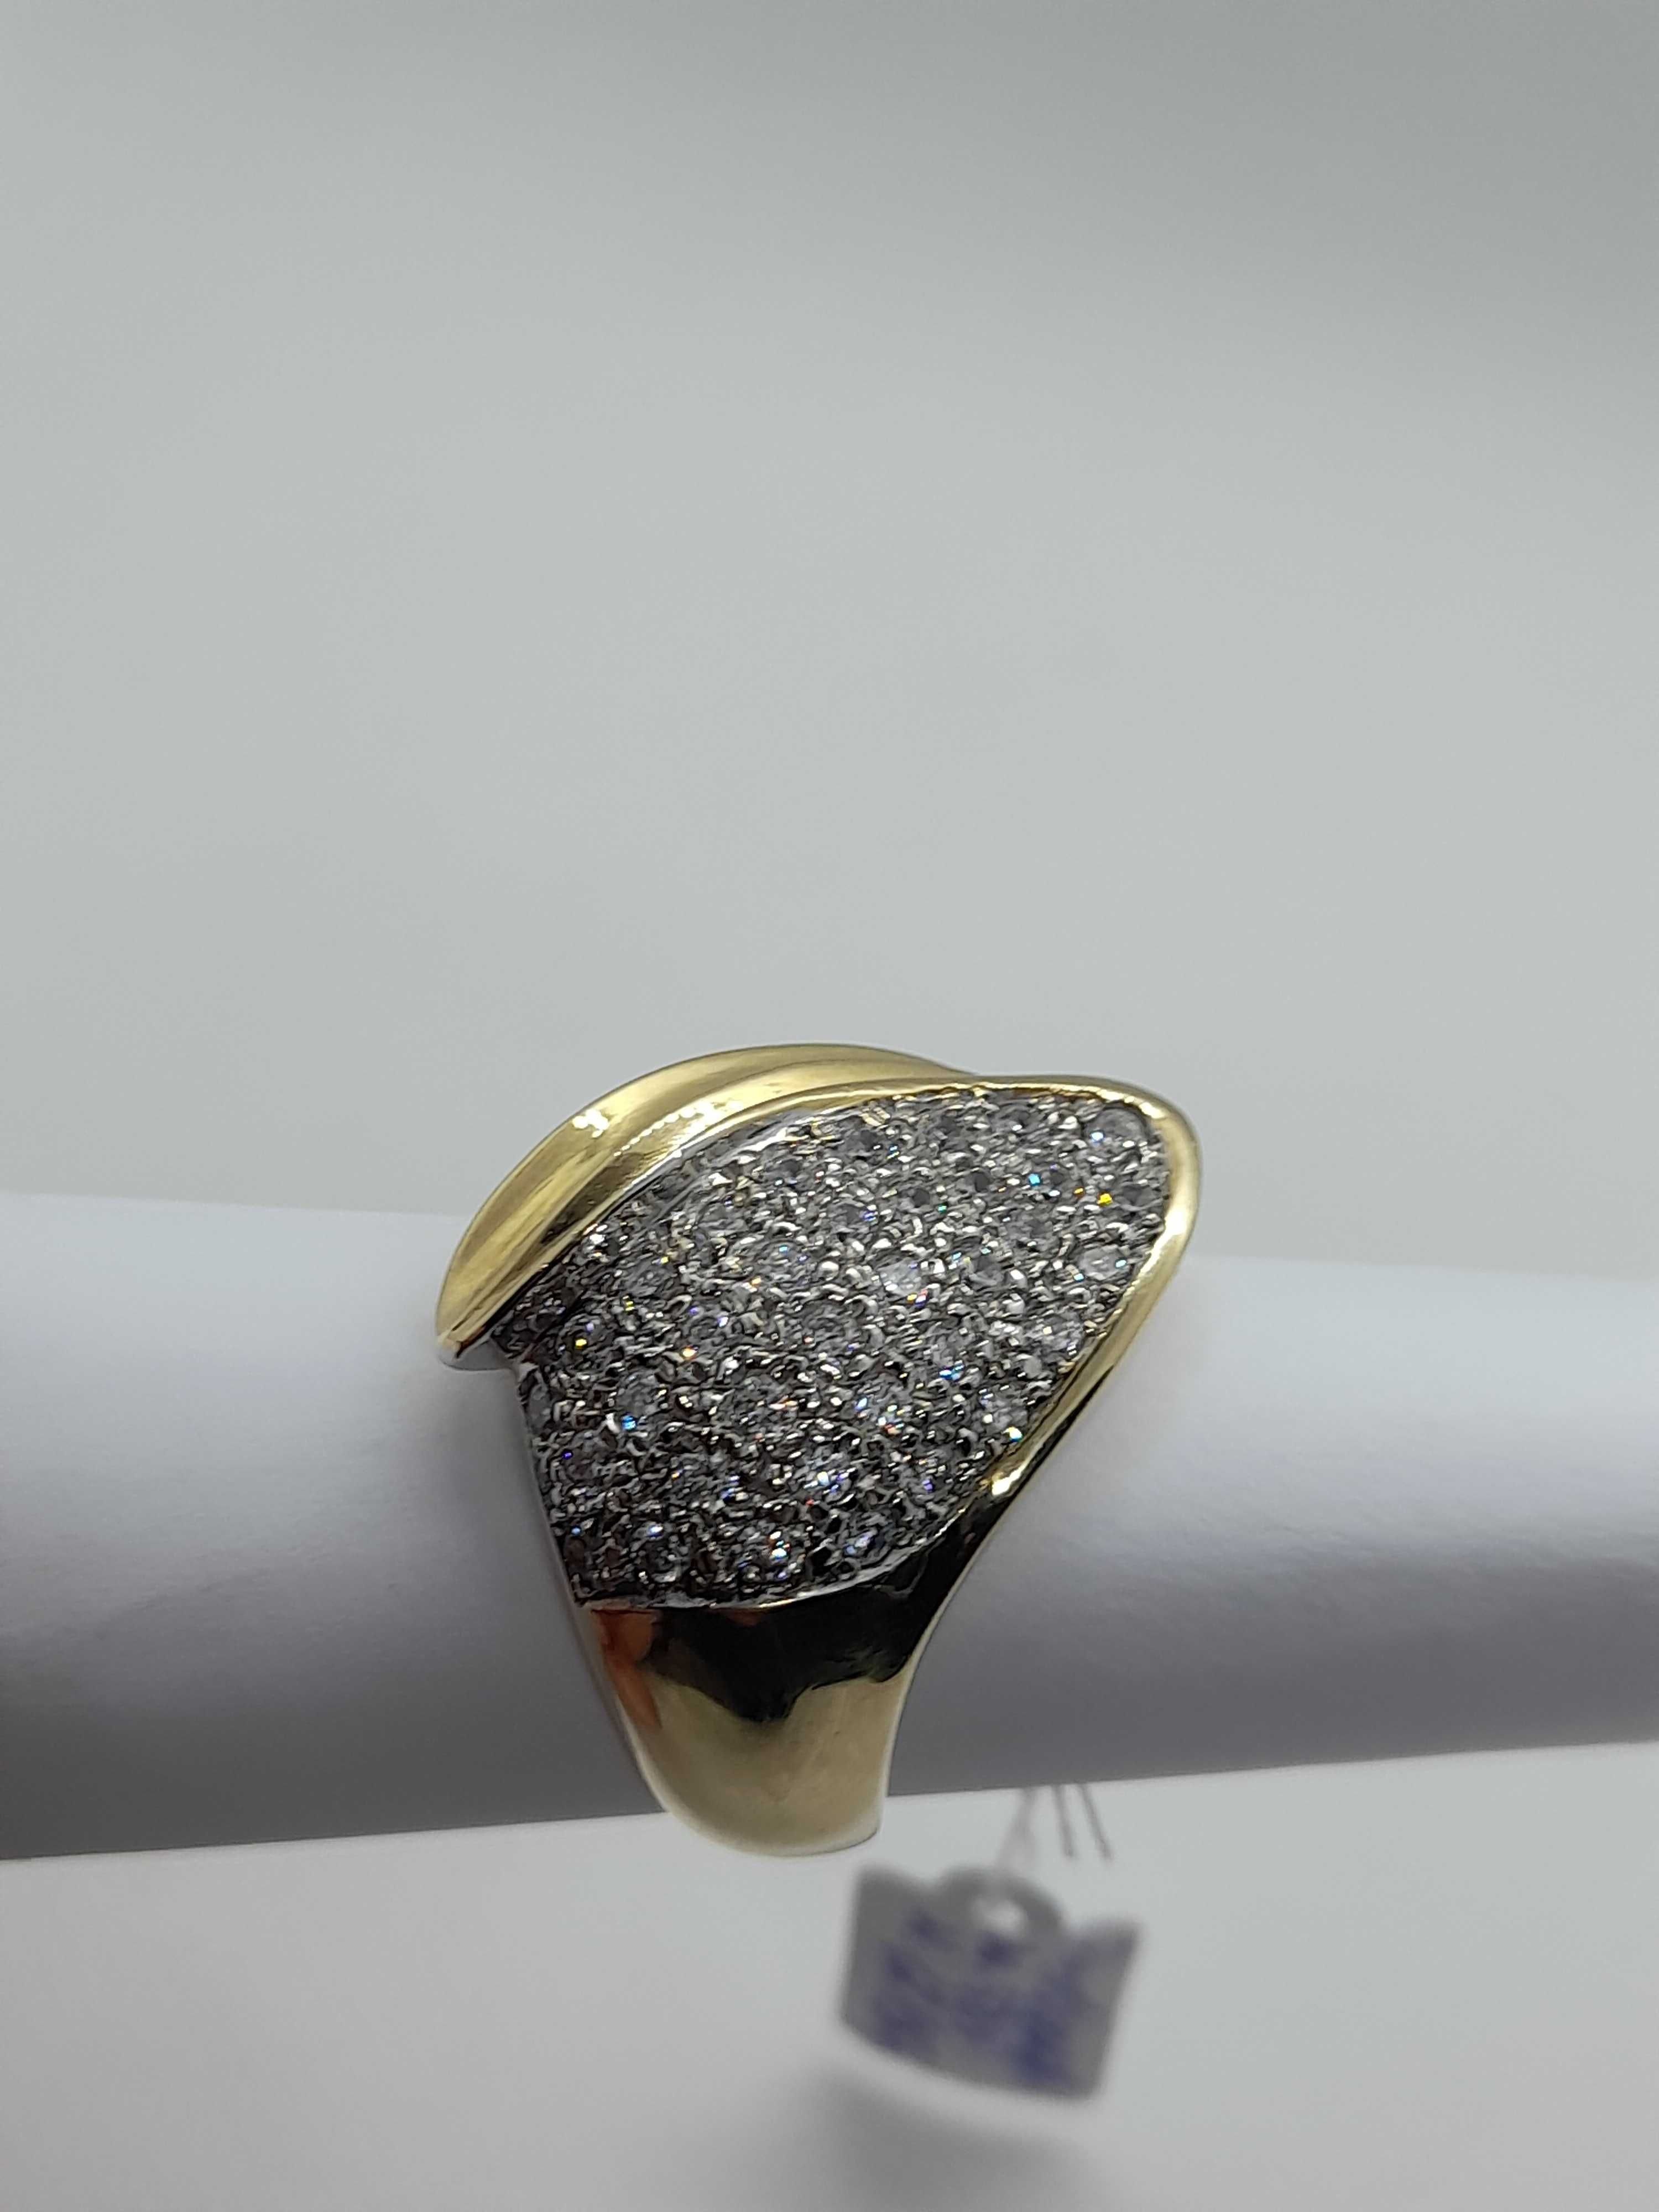 Imponujący  12g .złoty pierścień z pięknymi cyrkoniami